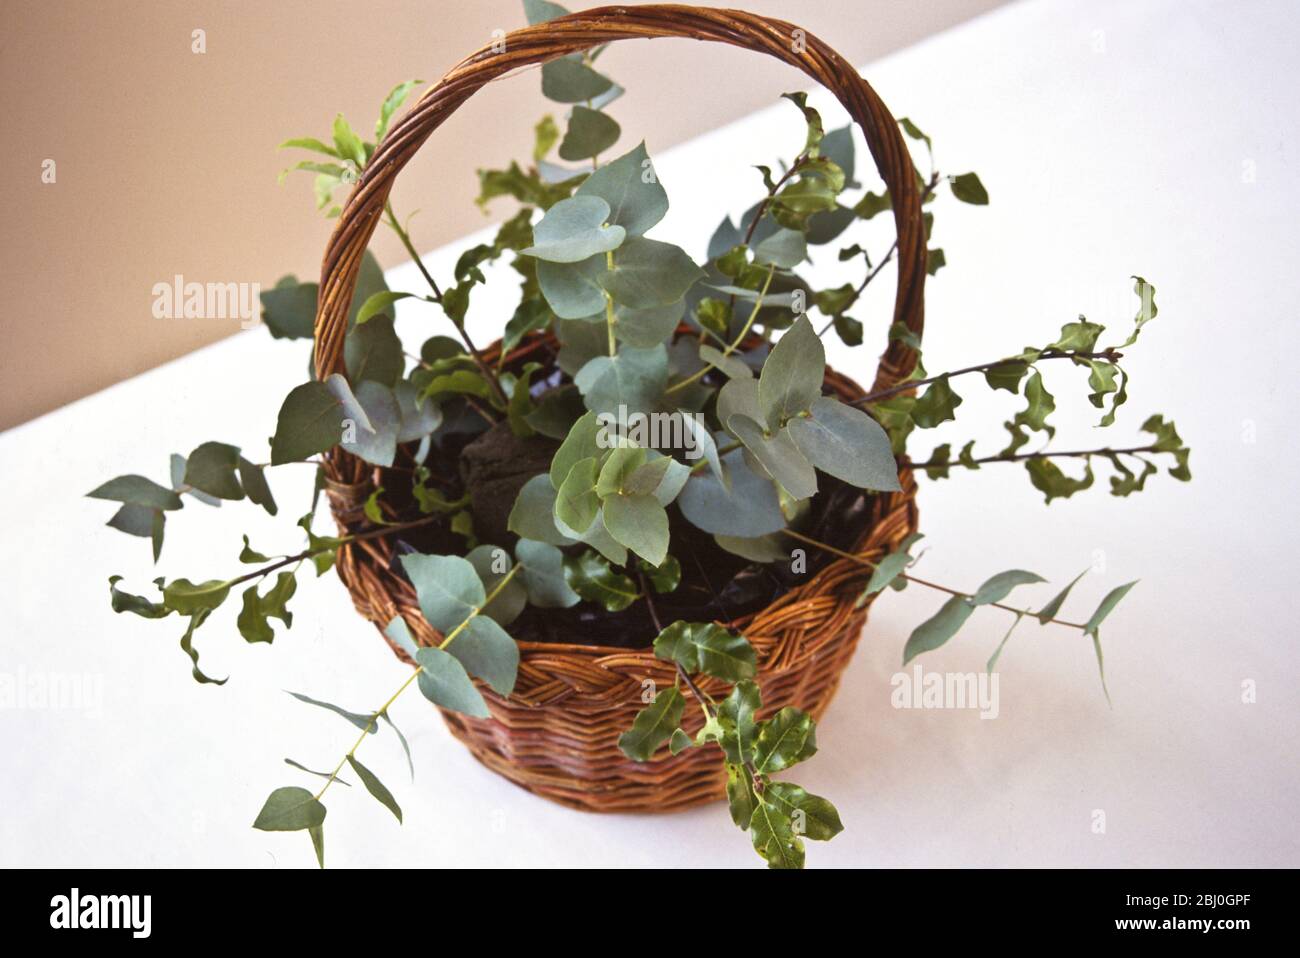 Fondation de l'arrangement de fleurs - eucalyptus et des brins de verdure dans oasis dans le panier manutentionné - Banque D'Images